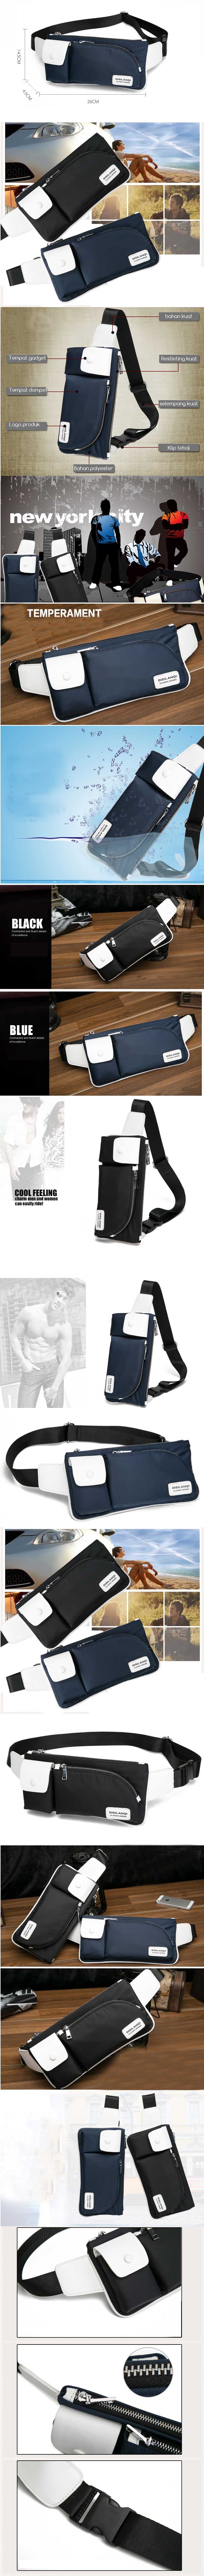 cari tas gadget model tas pinggang ? kami menyediakan tas gadget terbaru model tas pinggang dengan kualitas premium dan harga murah, klik dan pesan online sekarang.